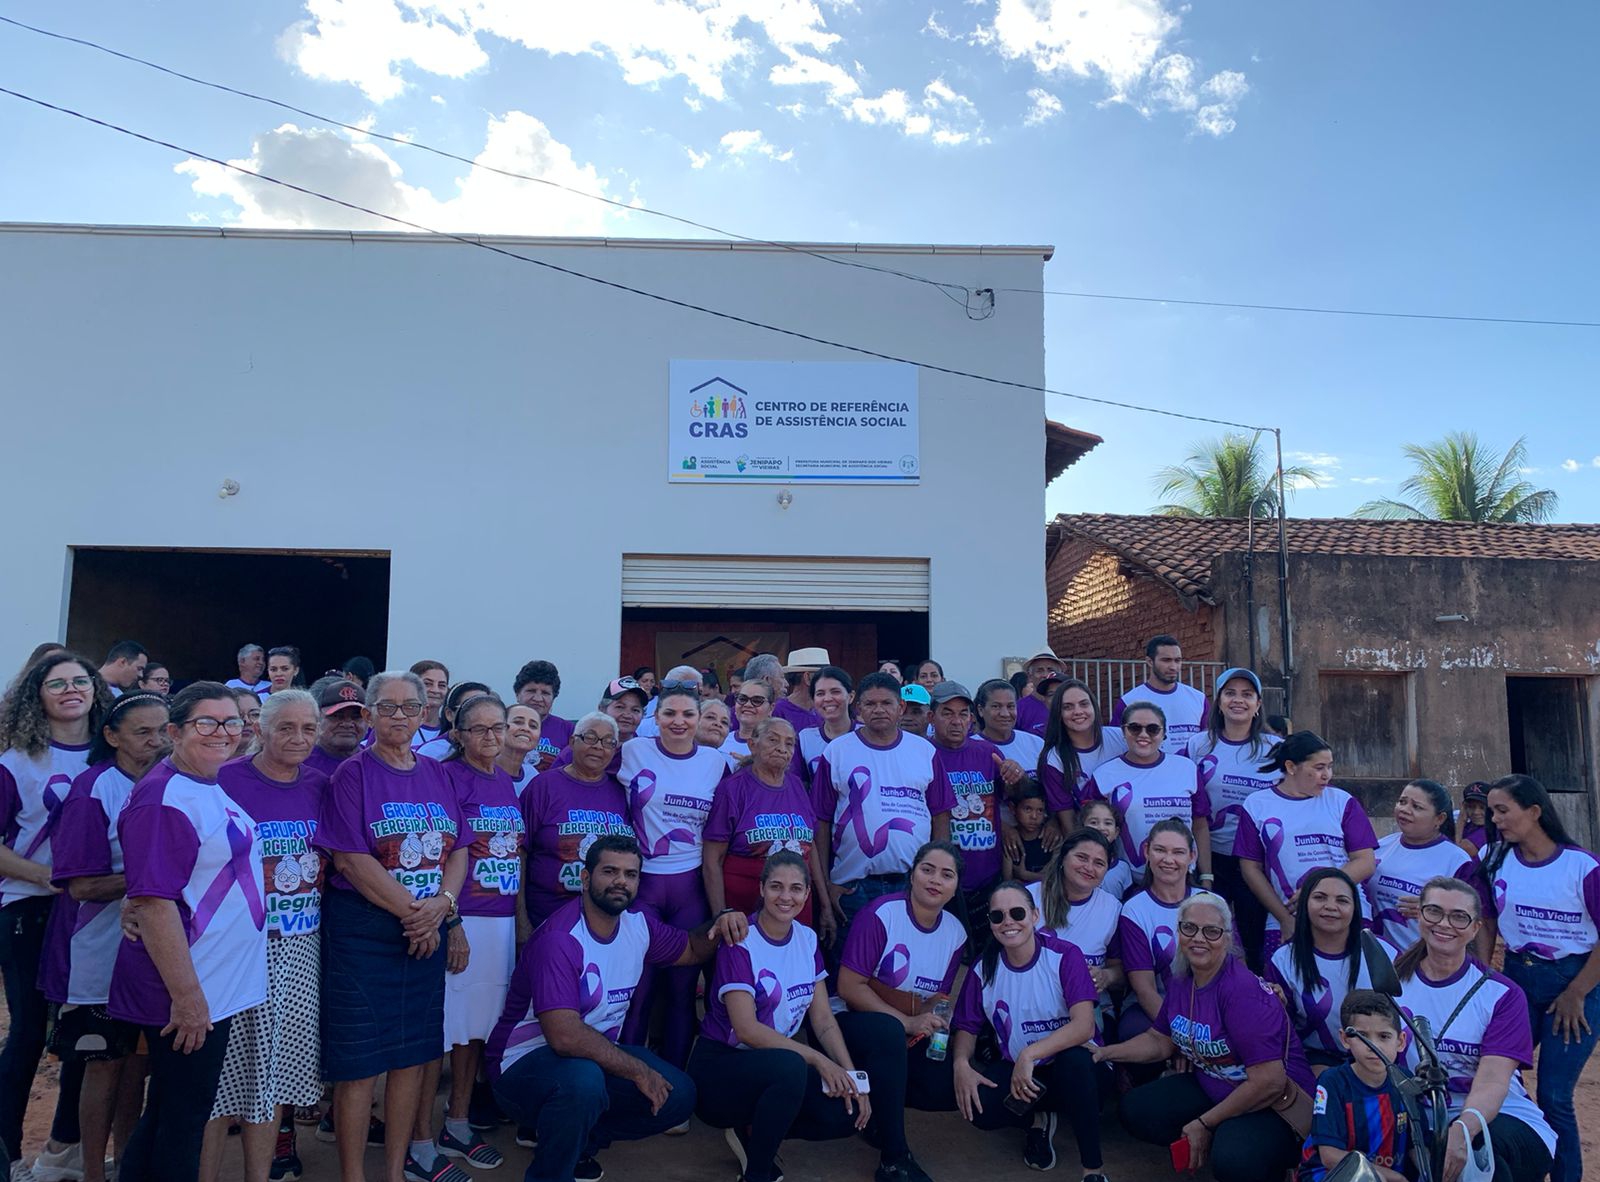 Prefeitura Municipal através da Secretaria de Assistência Social e Conselho da Pessoa Idosa, promovem caminhada em alusão a Campanha Junho Violeta.